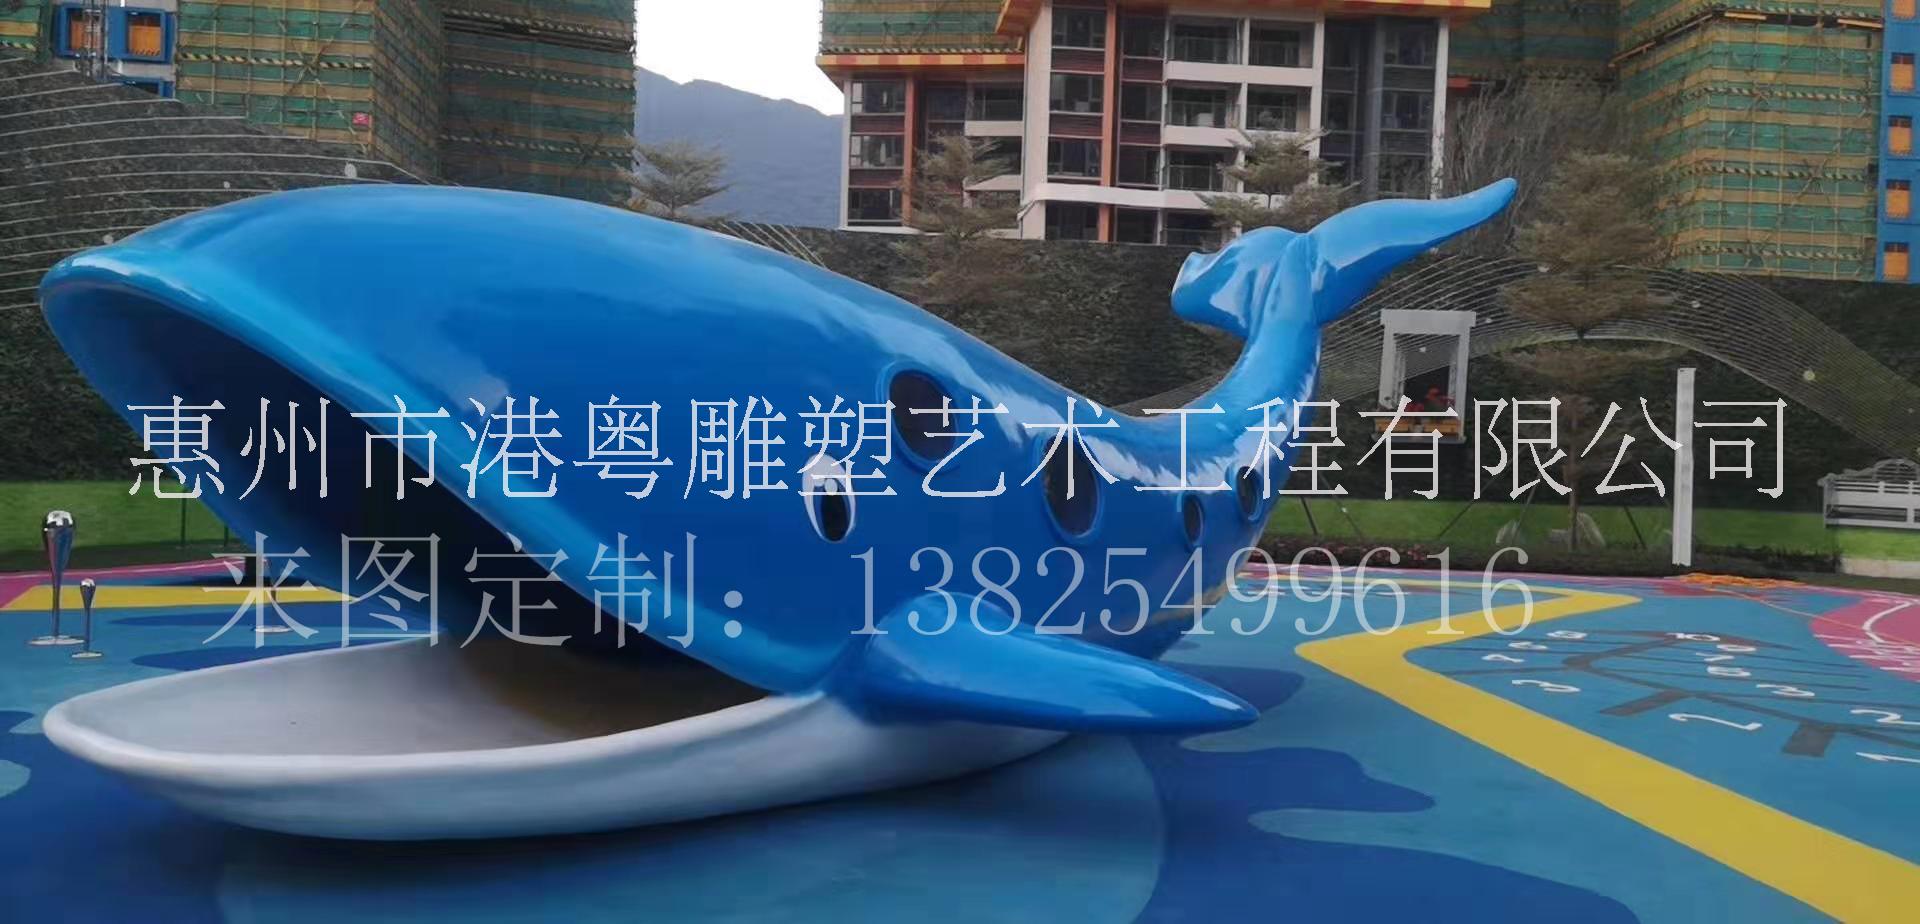 广州海洋生物主题乐园玻璃钢海洋生物鲨鱼海豚雕塑摆件